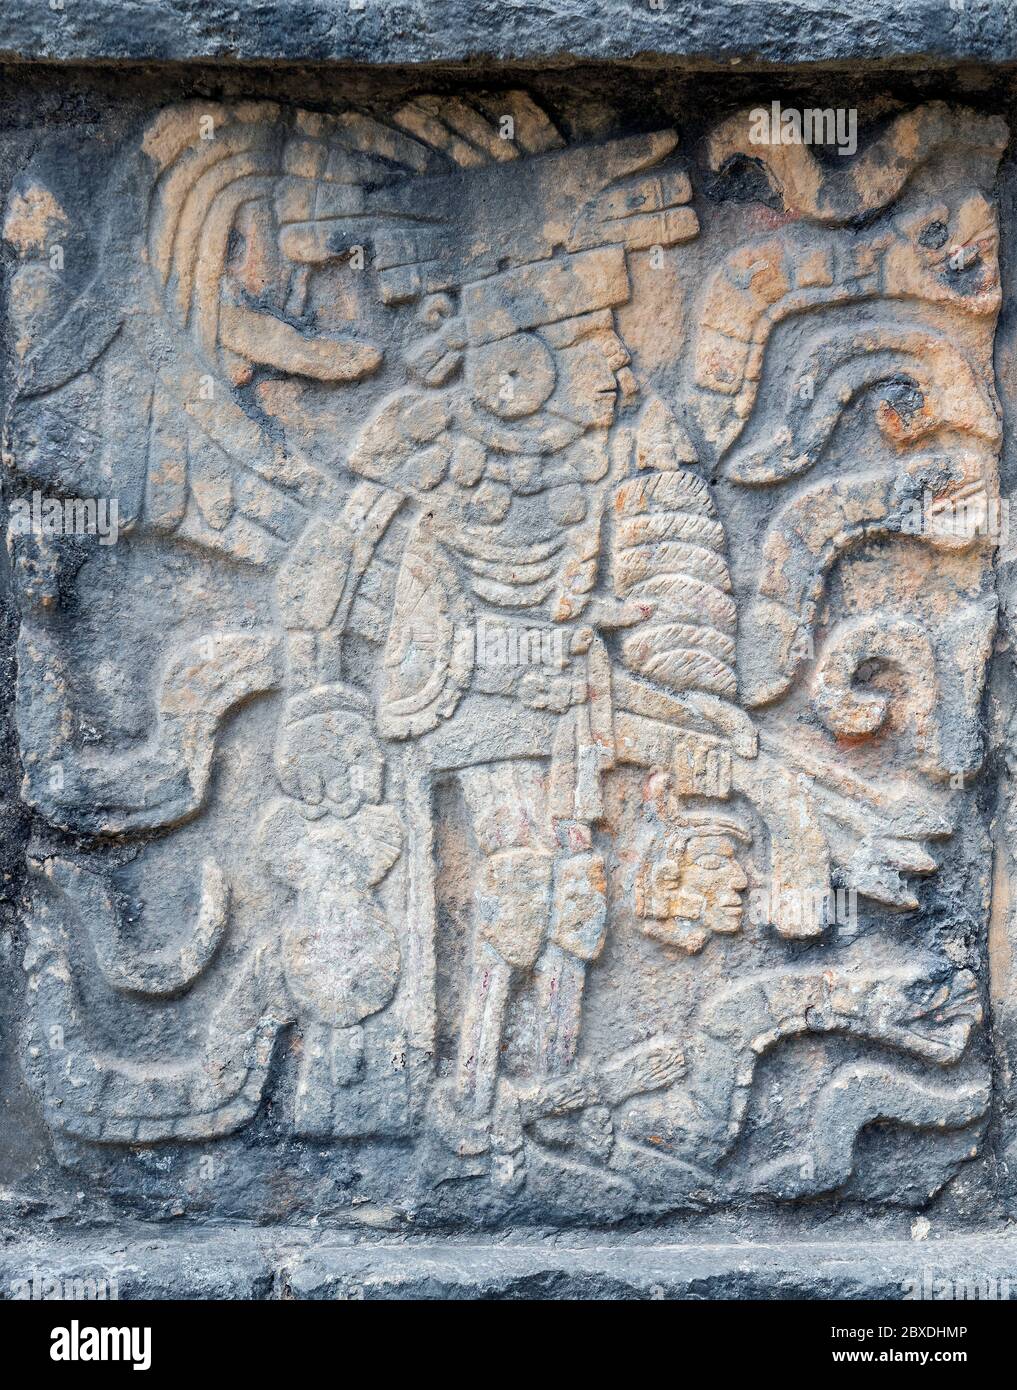 Bas relief d'un joueur de jeu de balle Maya avec protection de genou, coude et hanche et tête d'un joueur sacrifié dans la main gauche, Chichen Itza, Mexique. Banque D'Images